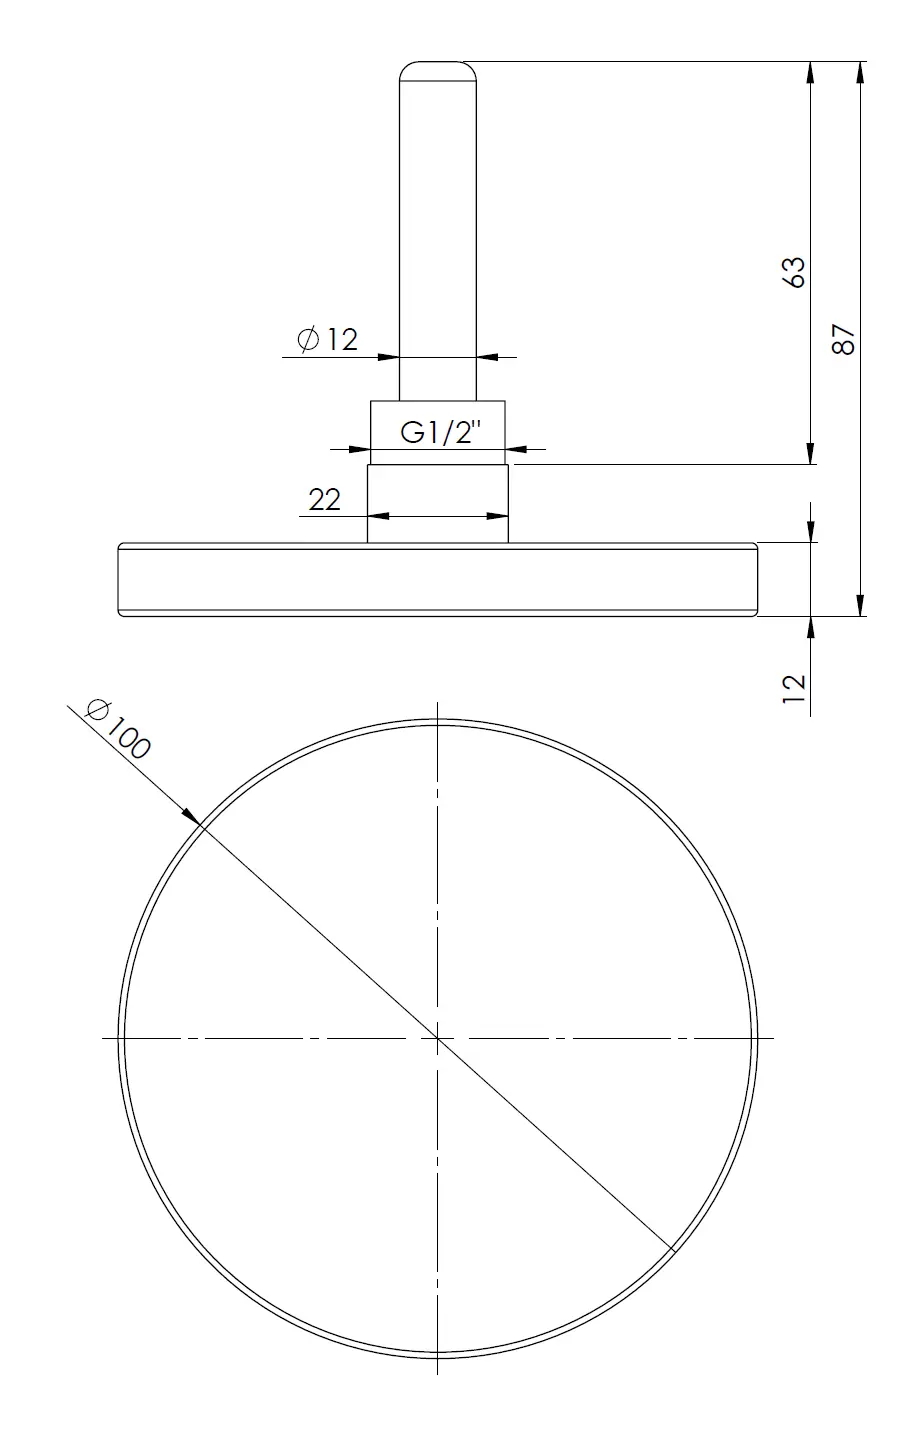 Termometr bimetaliczny BiTh 100, fi100 mm, -20÷60°C, L 63 mm, G1/2", ax, kl. 2 - budowa